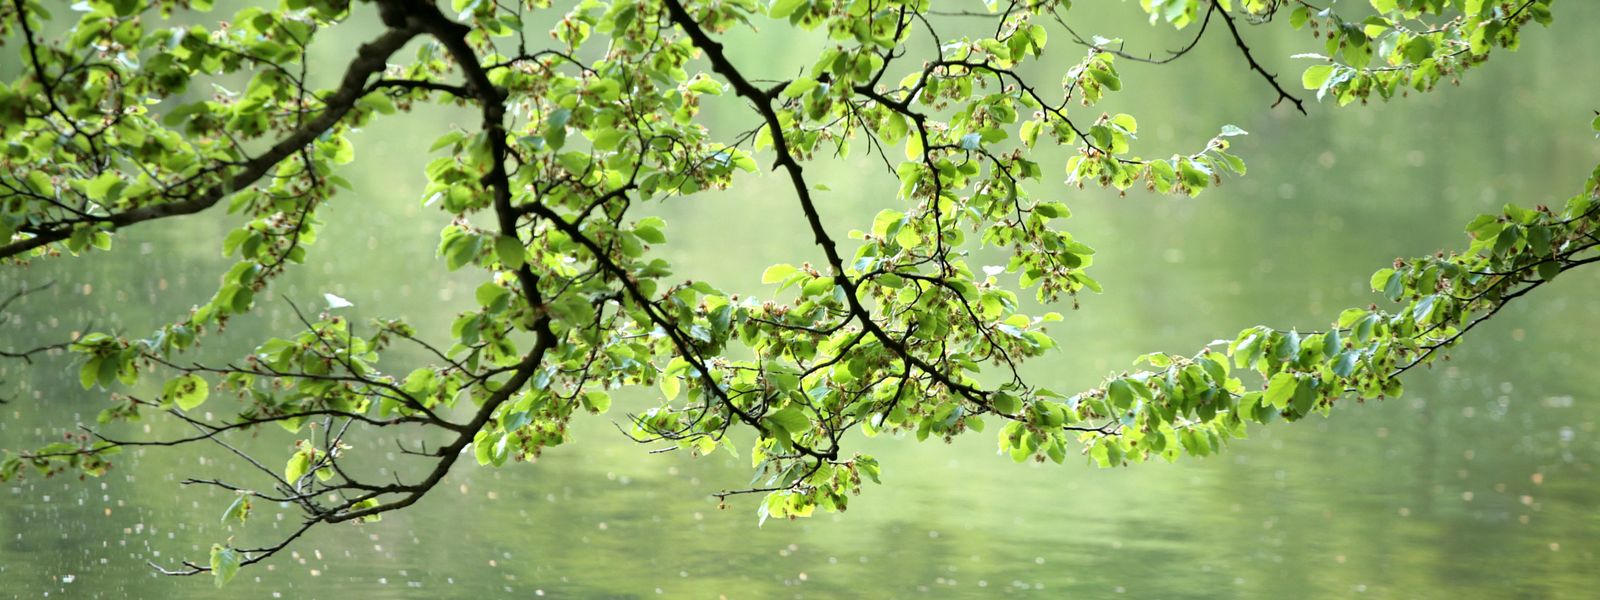 Spring, tree at lake